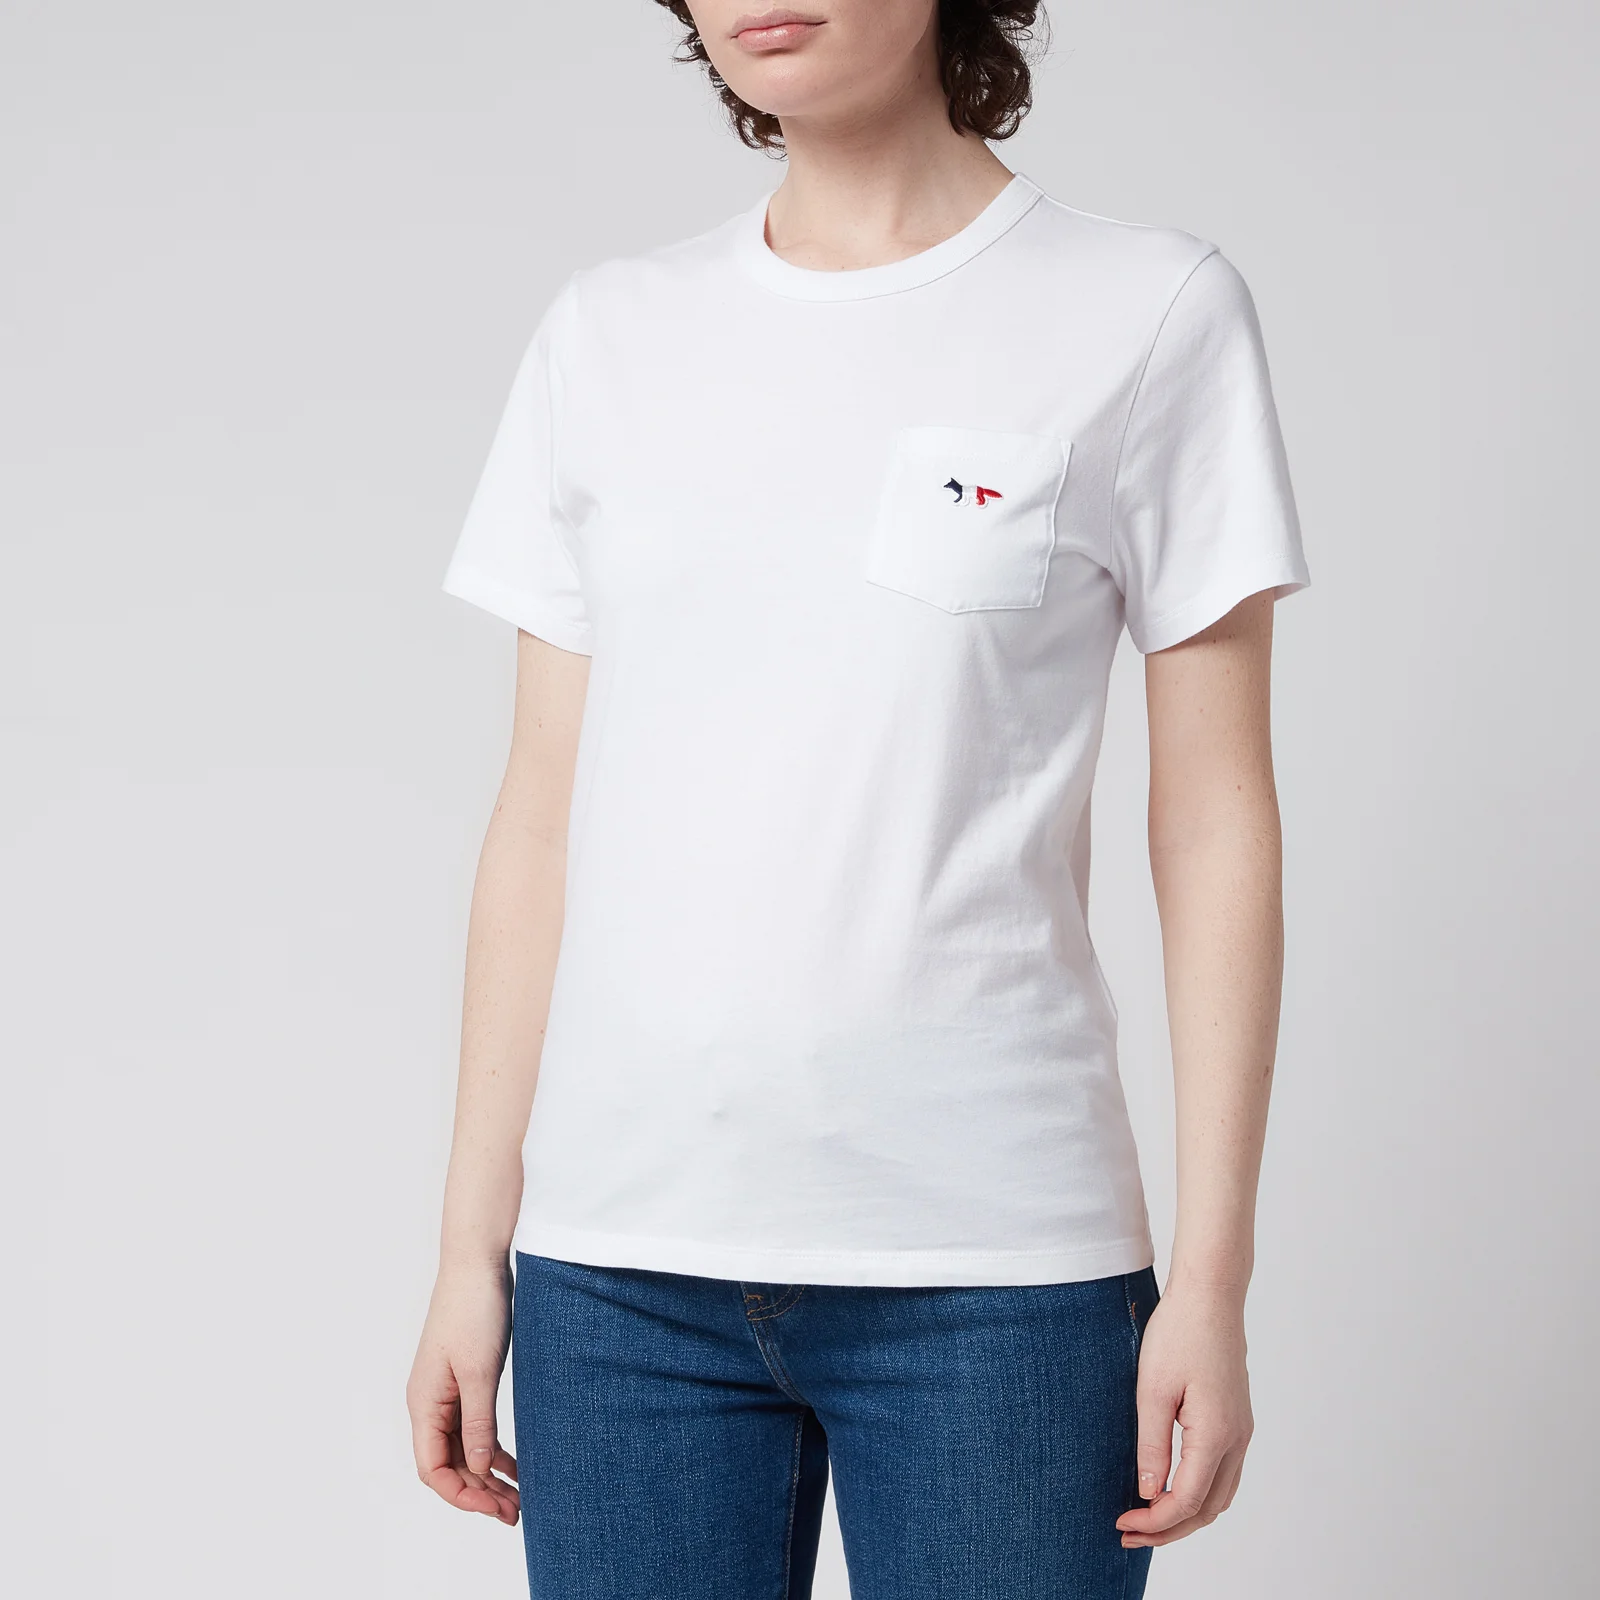 Maison Kitsuné Women's Tricolor Fox Patch Pocket T-Shirt - White - XS Image 1